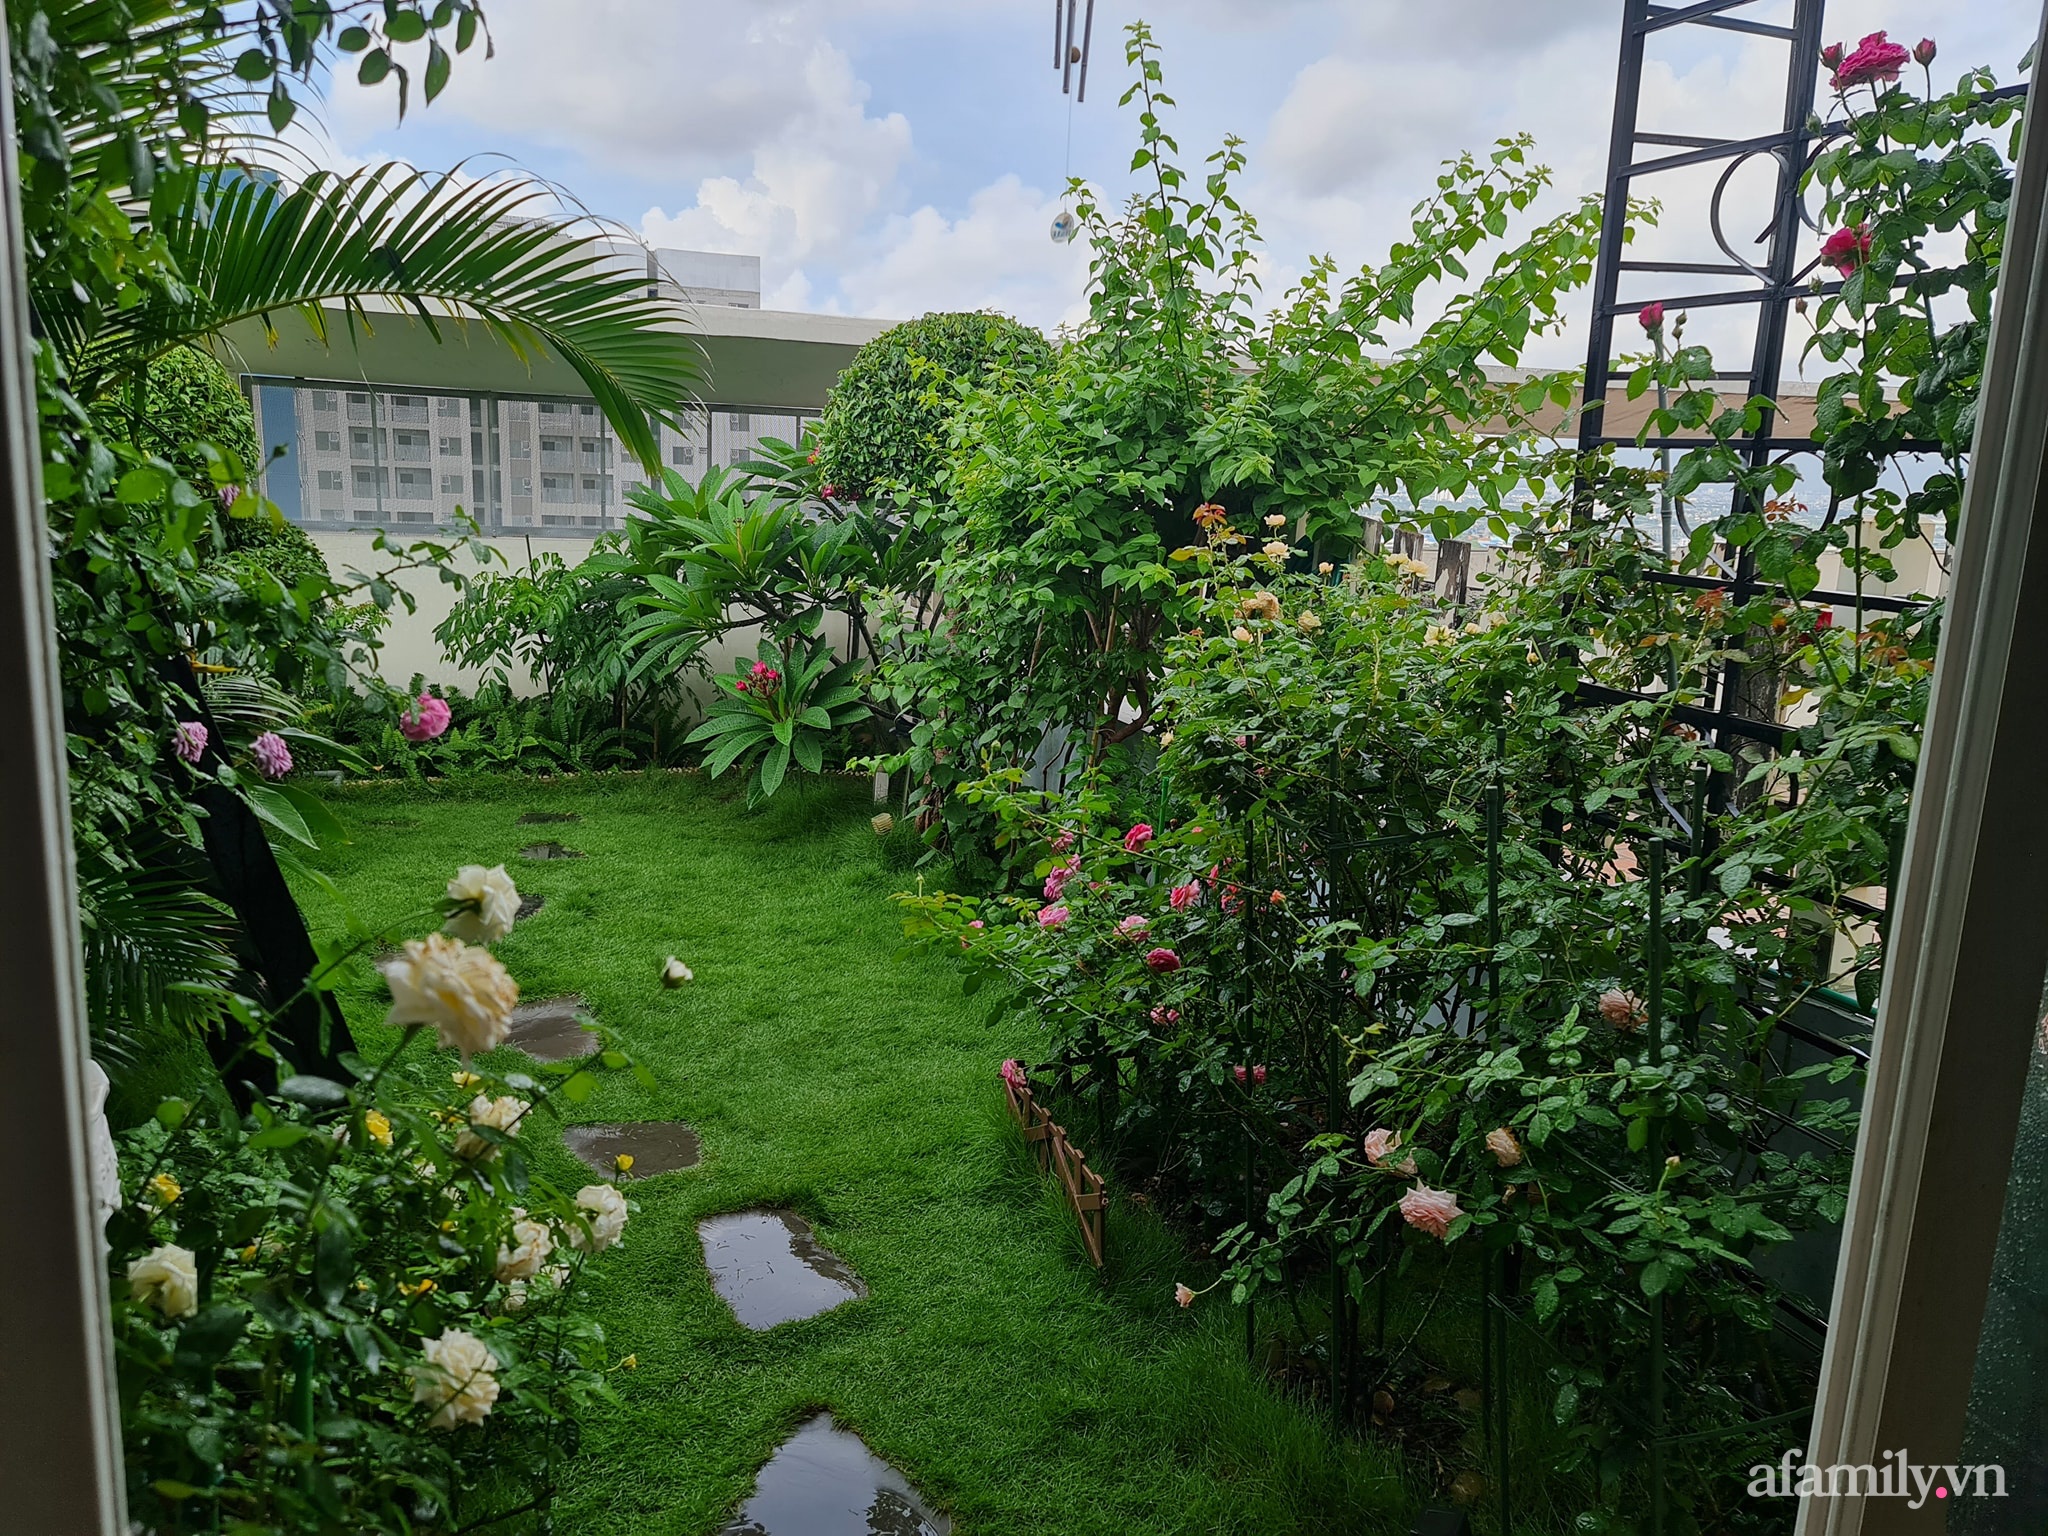 Đắm say trước vẻ đẹp ngọt lịm tim của vườn hồng rực rỡ trên sân thượng ở Bình Dương - Ảnh 2.